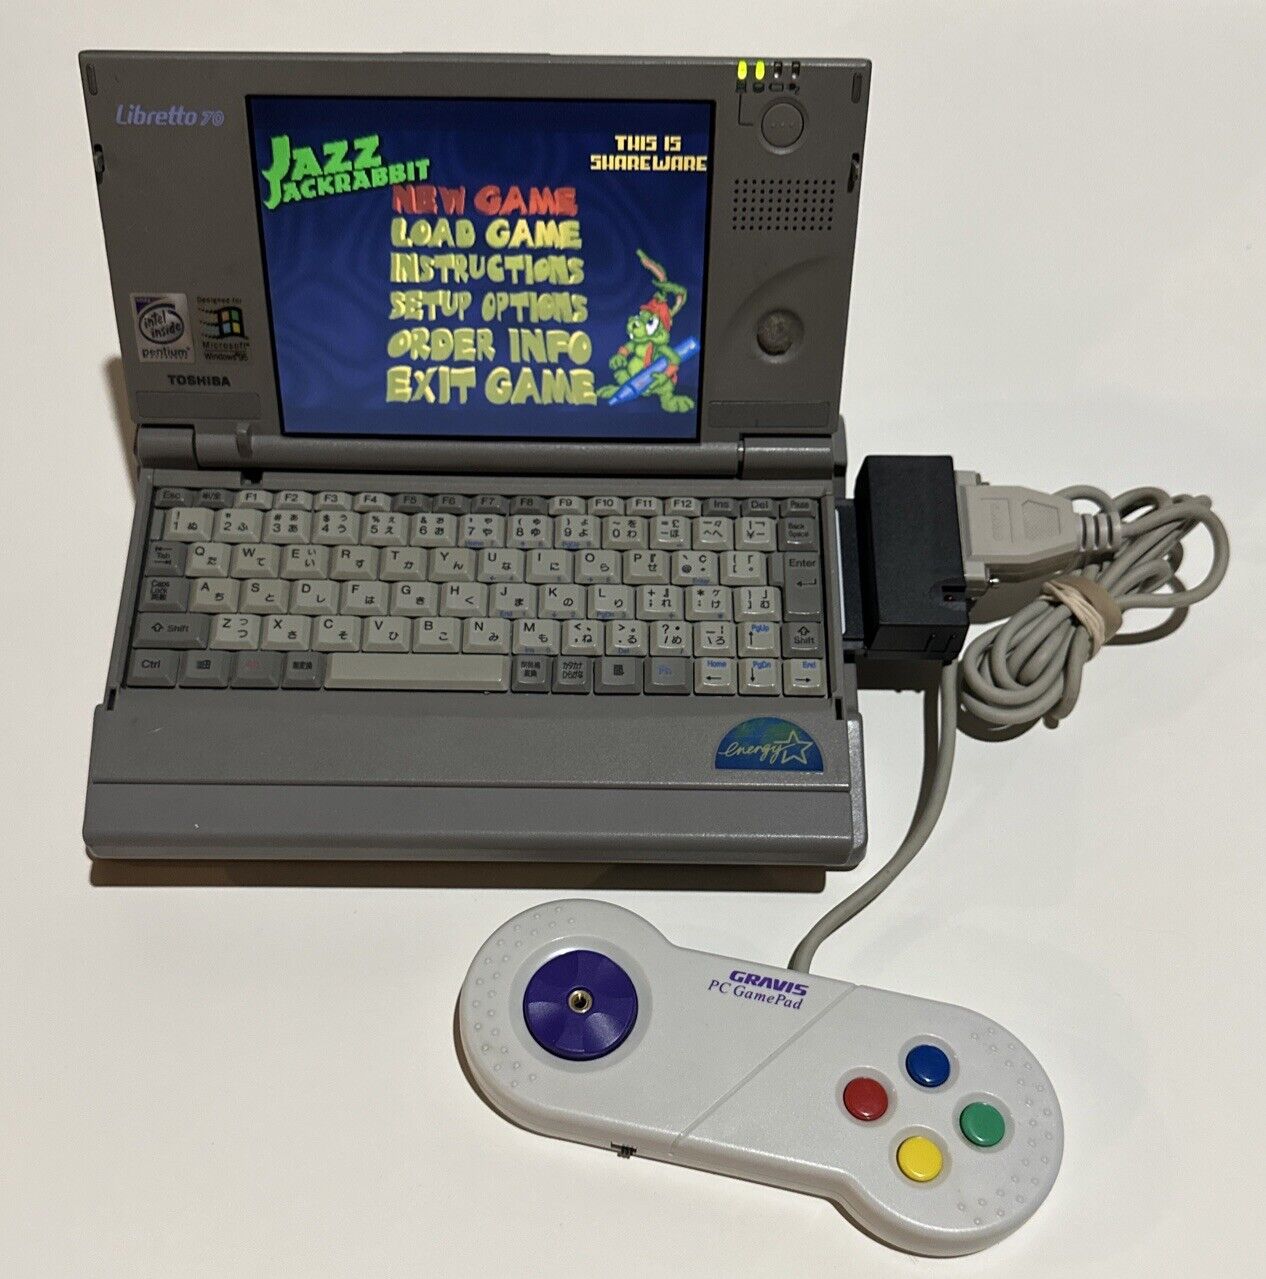 Quickshot PCMCIA Game Port / Gameport for retro gaming laptops